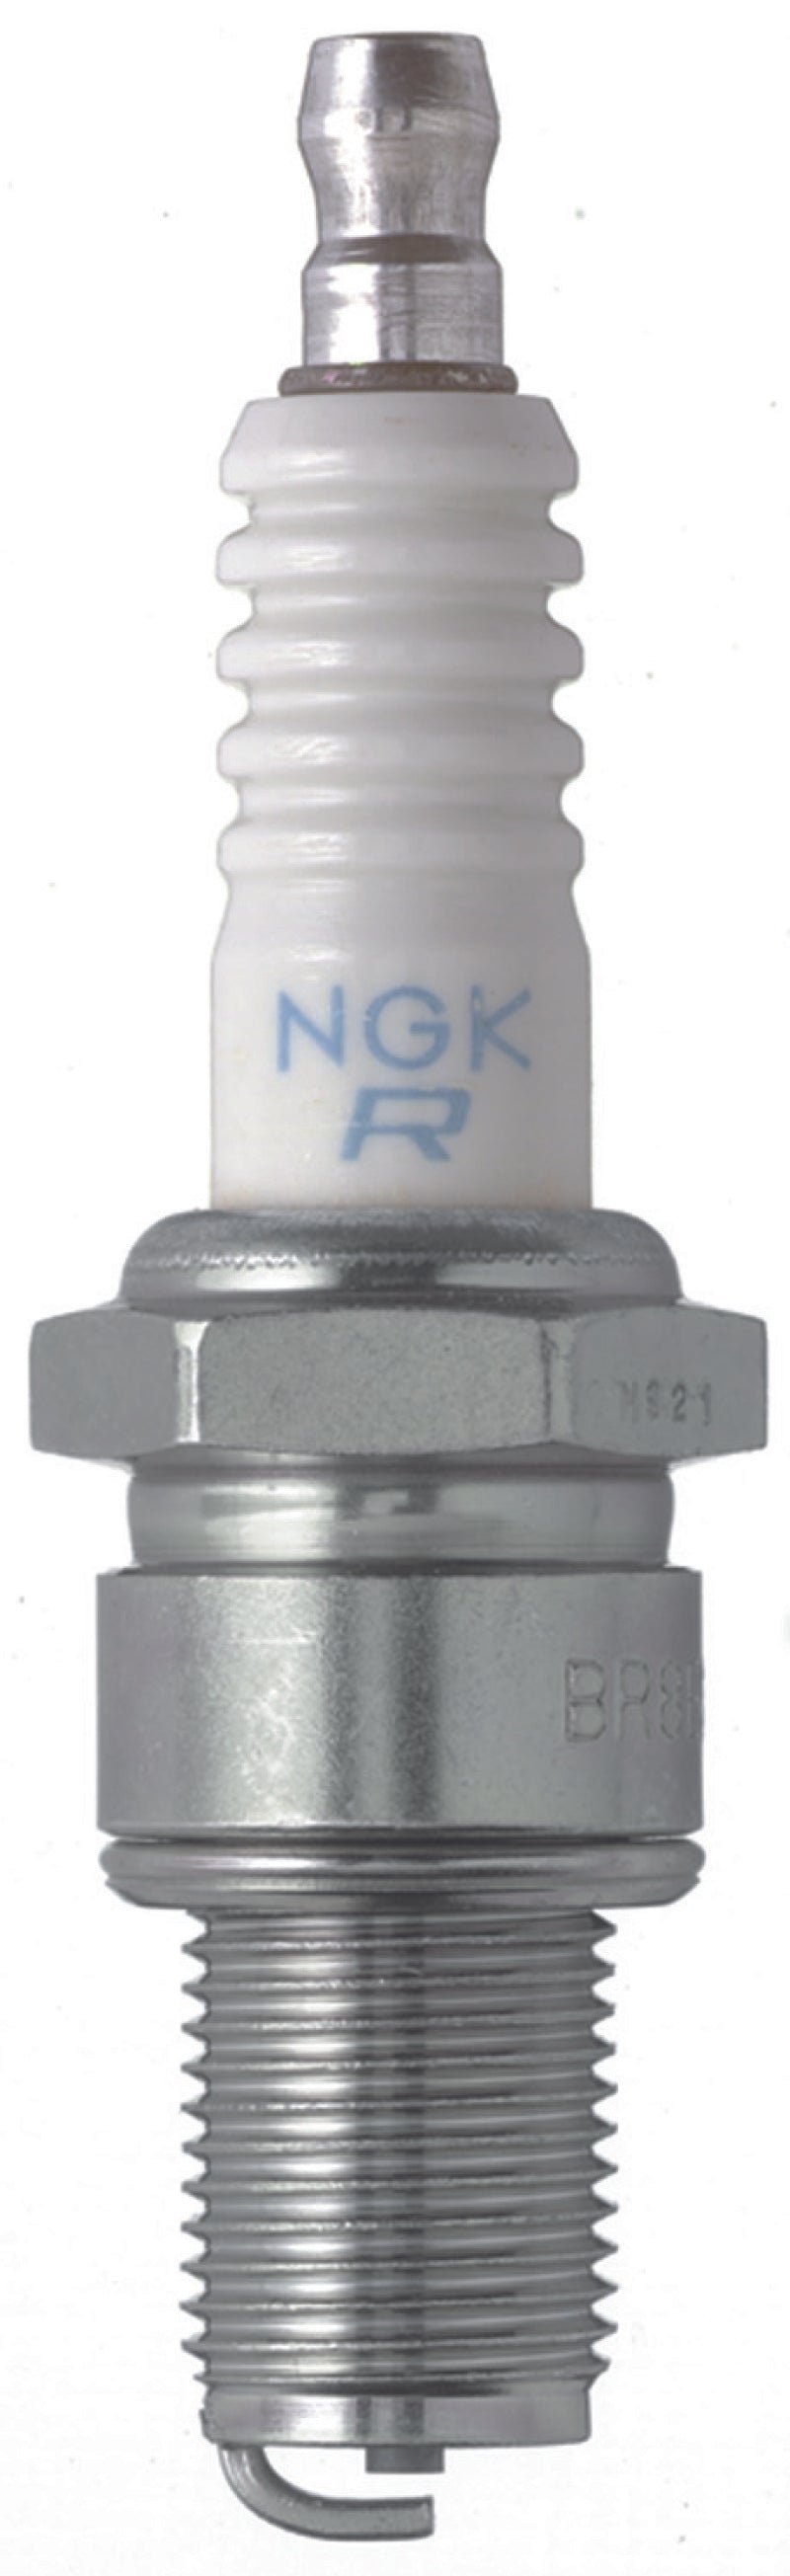 NGK Nickel Spark Plug Box of 4 (BR8ES).